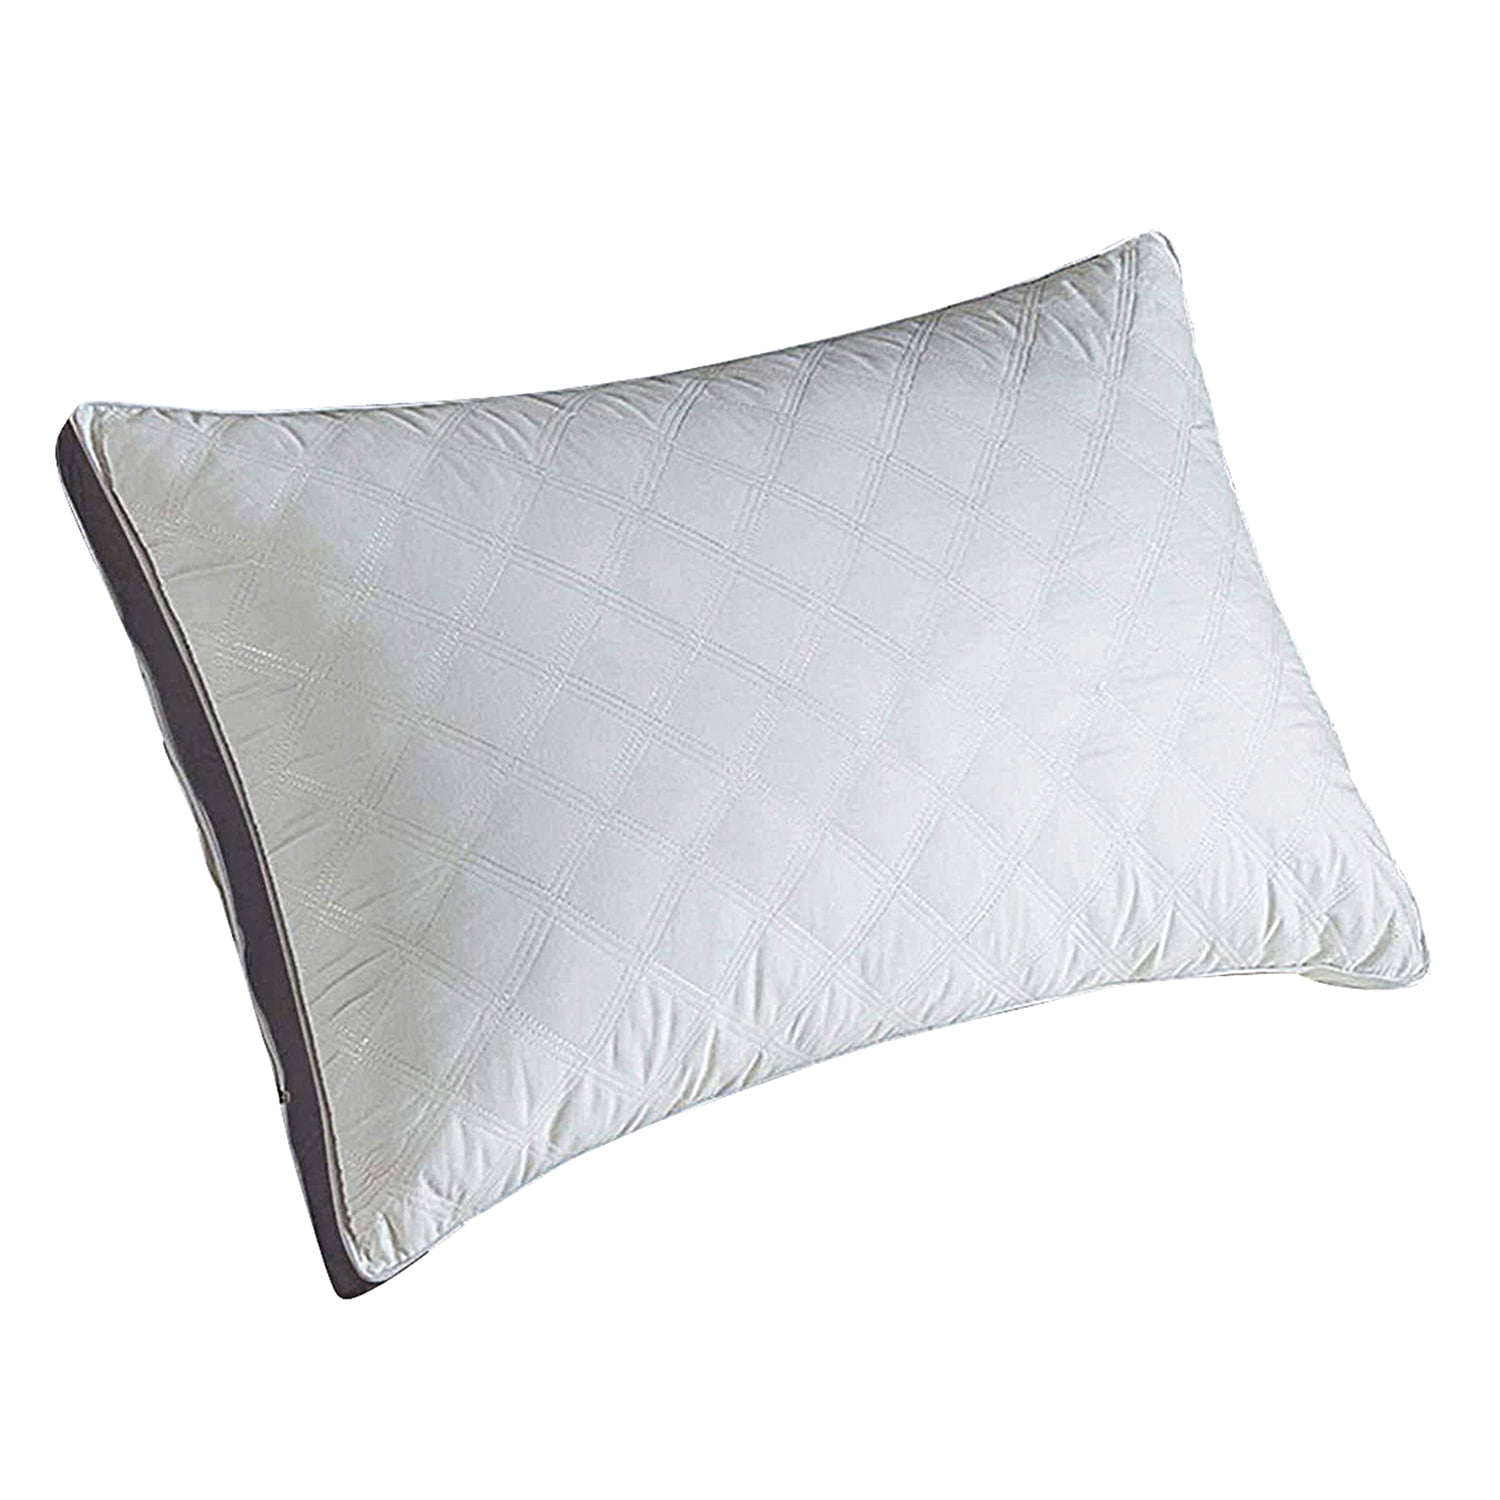   Buckwheat pillow cervical health pillow candy round pillow let sleep better 